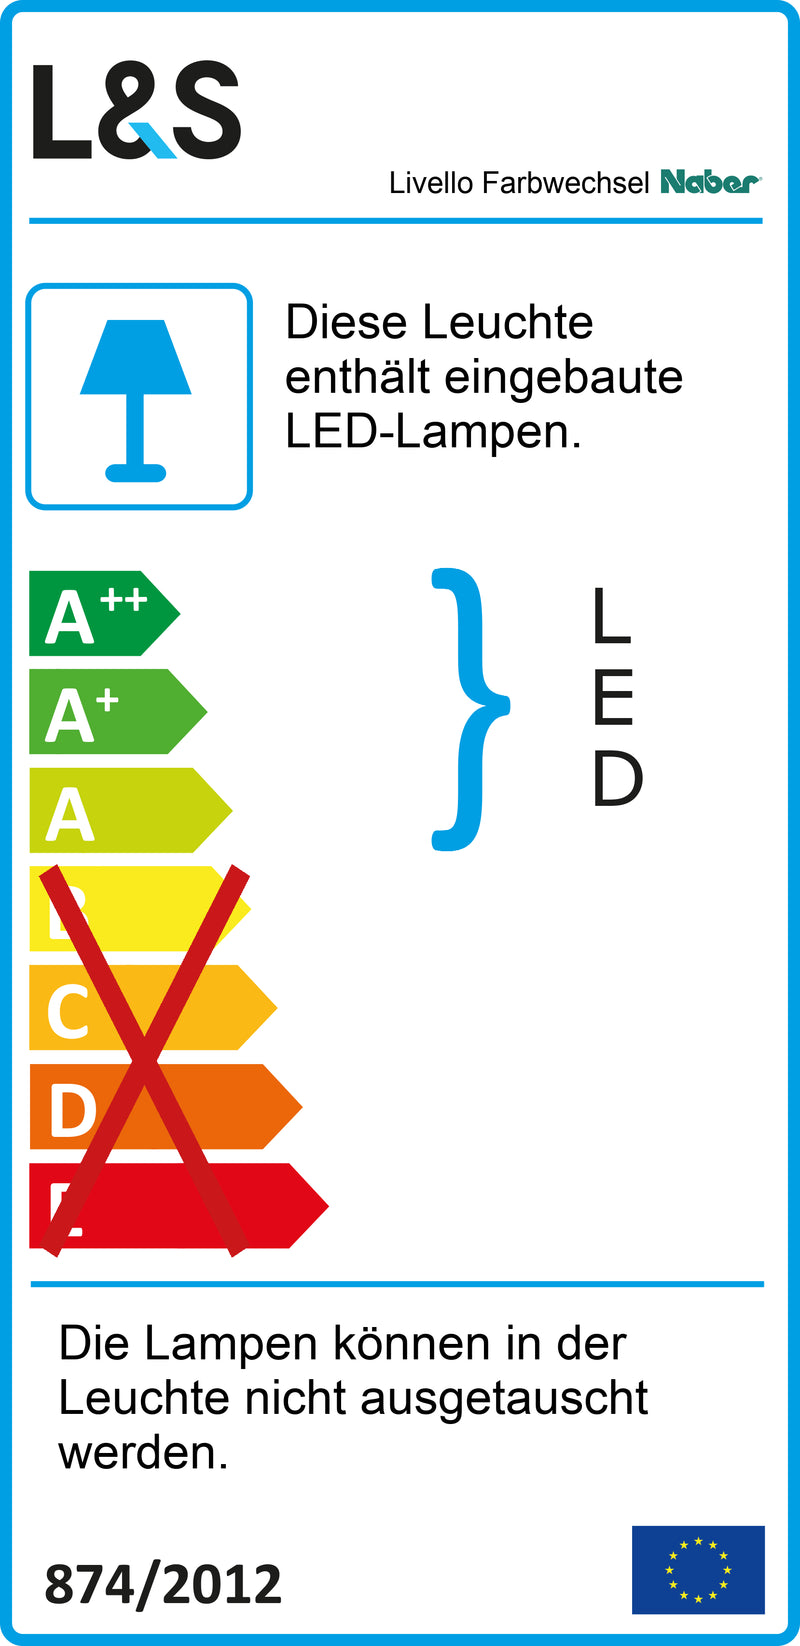 E-Label zu Zeichnung zu Livello Farbwechsel LED als Variante Set-2, alufarbig von Naber GmbH in der Kategorie Lichttechnik in Österreich auf conceptshop.at